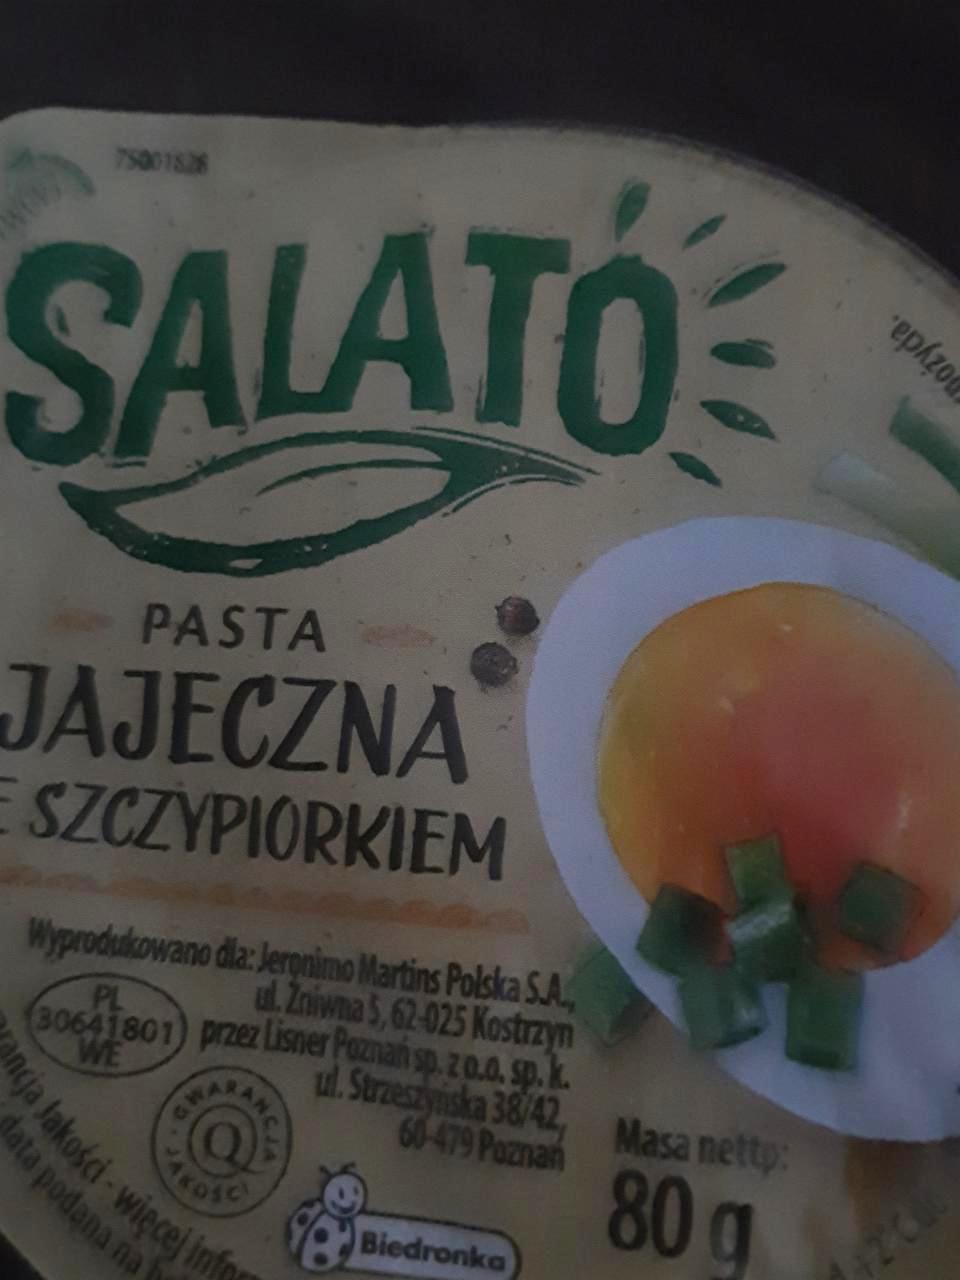 Zdjęcia - Pasta jajaczena ze szczypiorkiem Salato